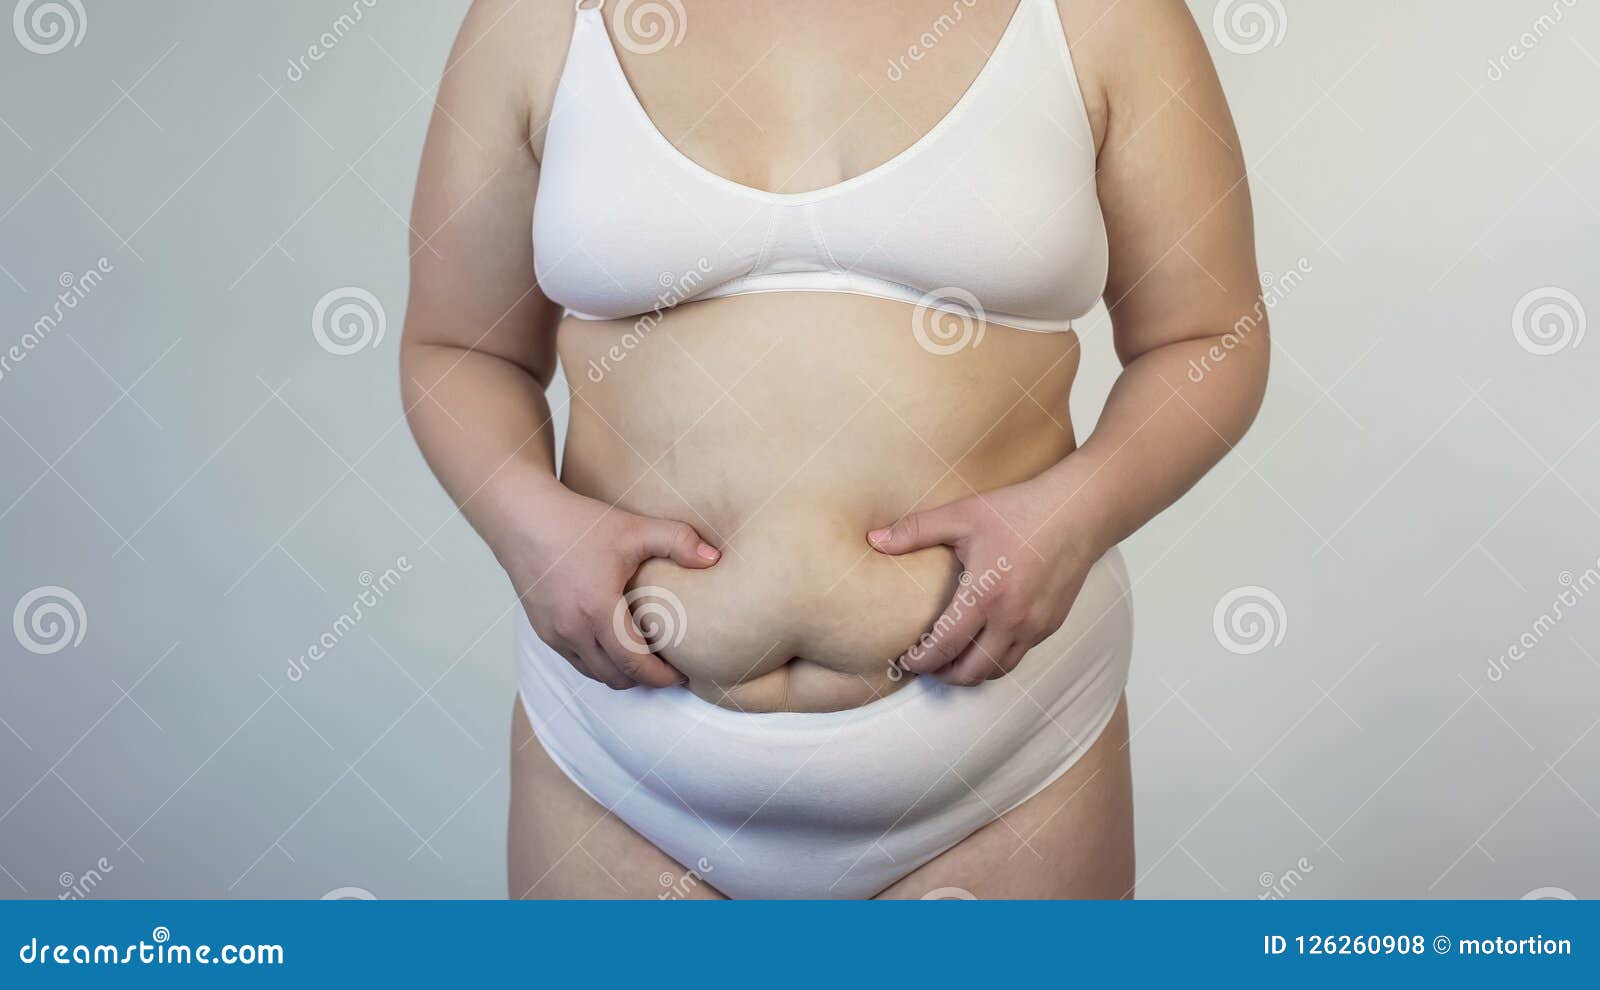 Vientre Caído Conmovedor De La Mujer Obesa, Problema Gordo De Las